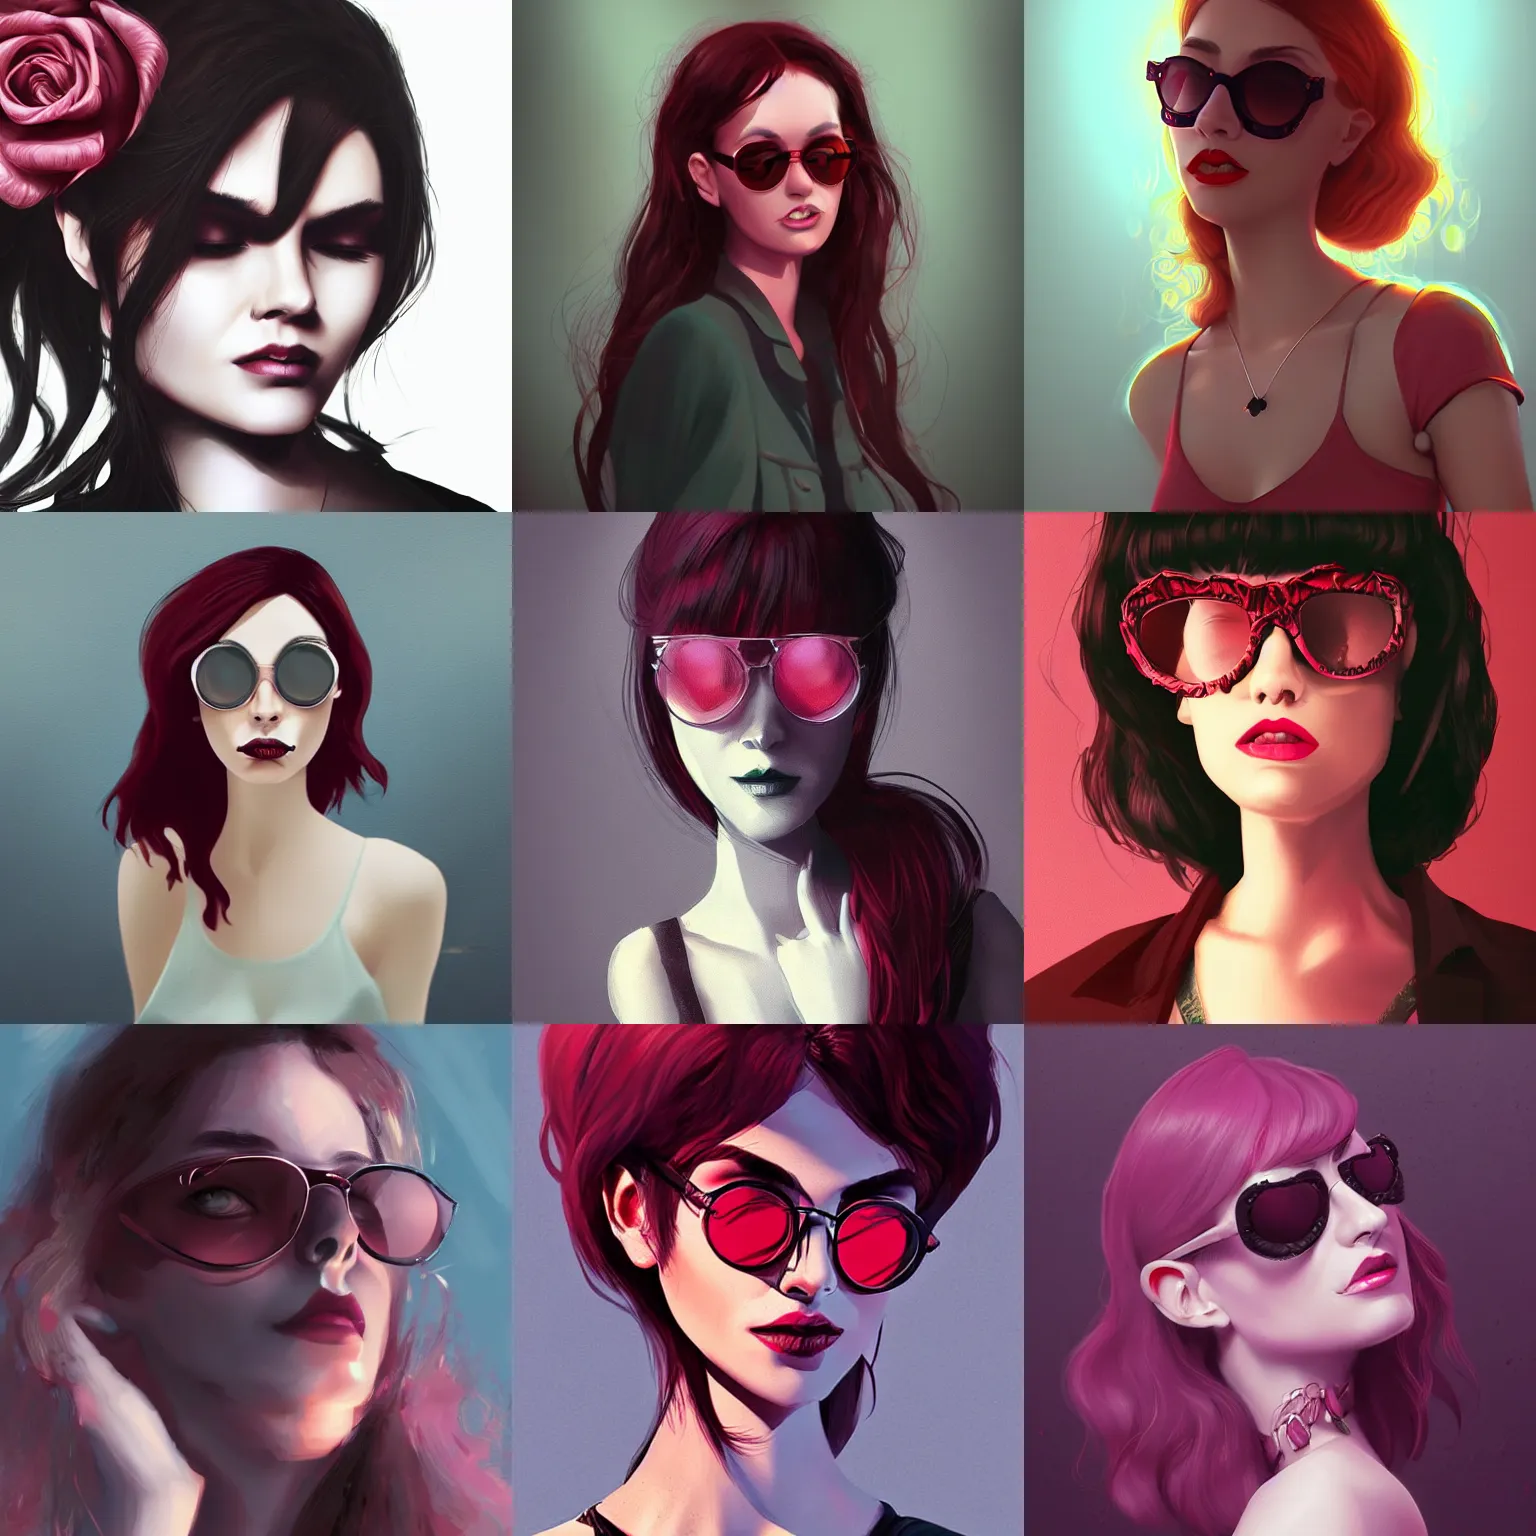 Prompt: Woman with rose tinted glasses, dark, menacing, artstation, digital art